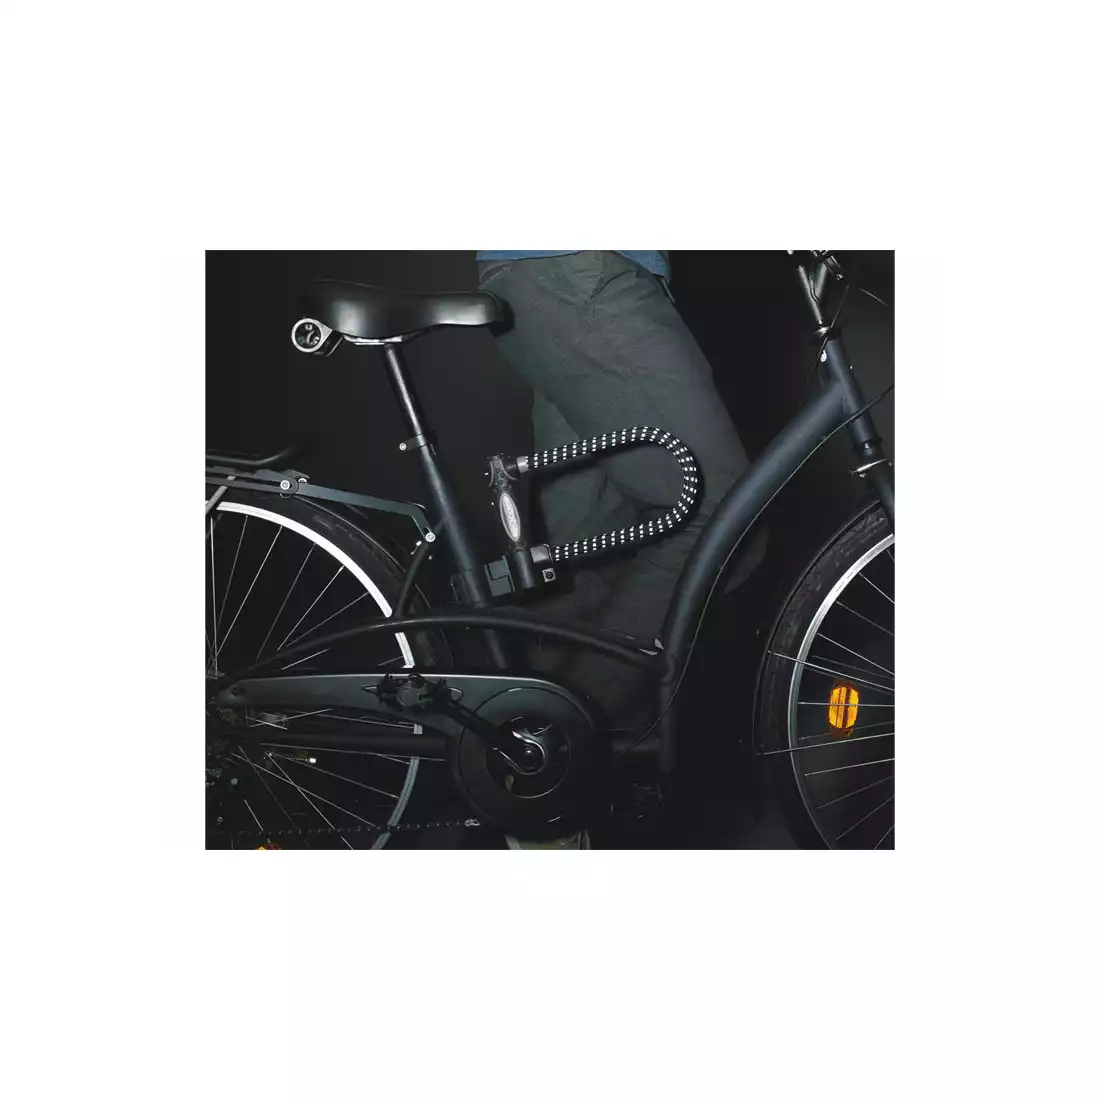 Zapięcie rowerowe MASTERLOCK 8195LW U-LOCK 13mm 110mm 280mm KLUCZYK pokryte gumą z refleksem czarne MRL-8195EURDPROLWREF SS16